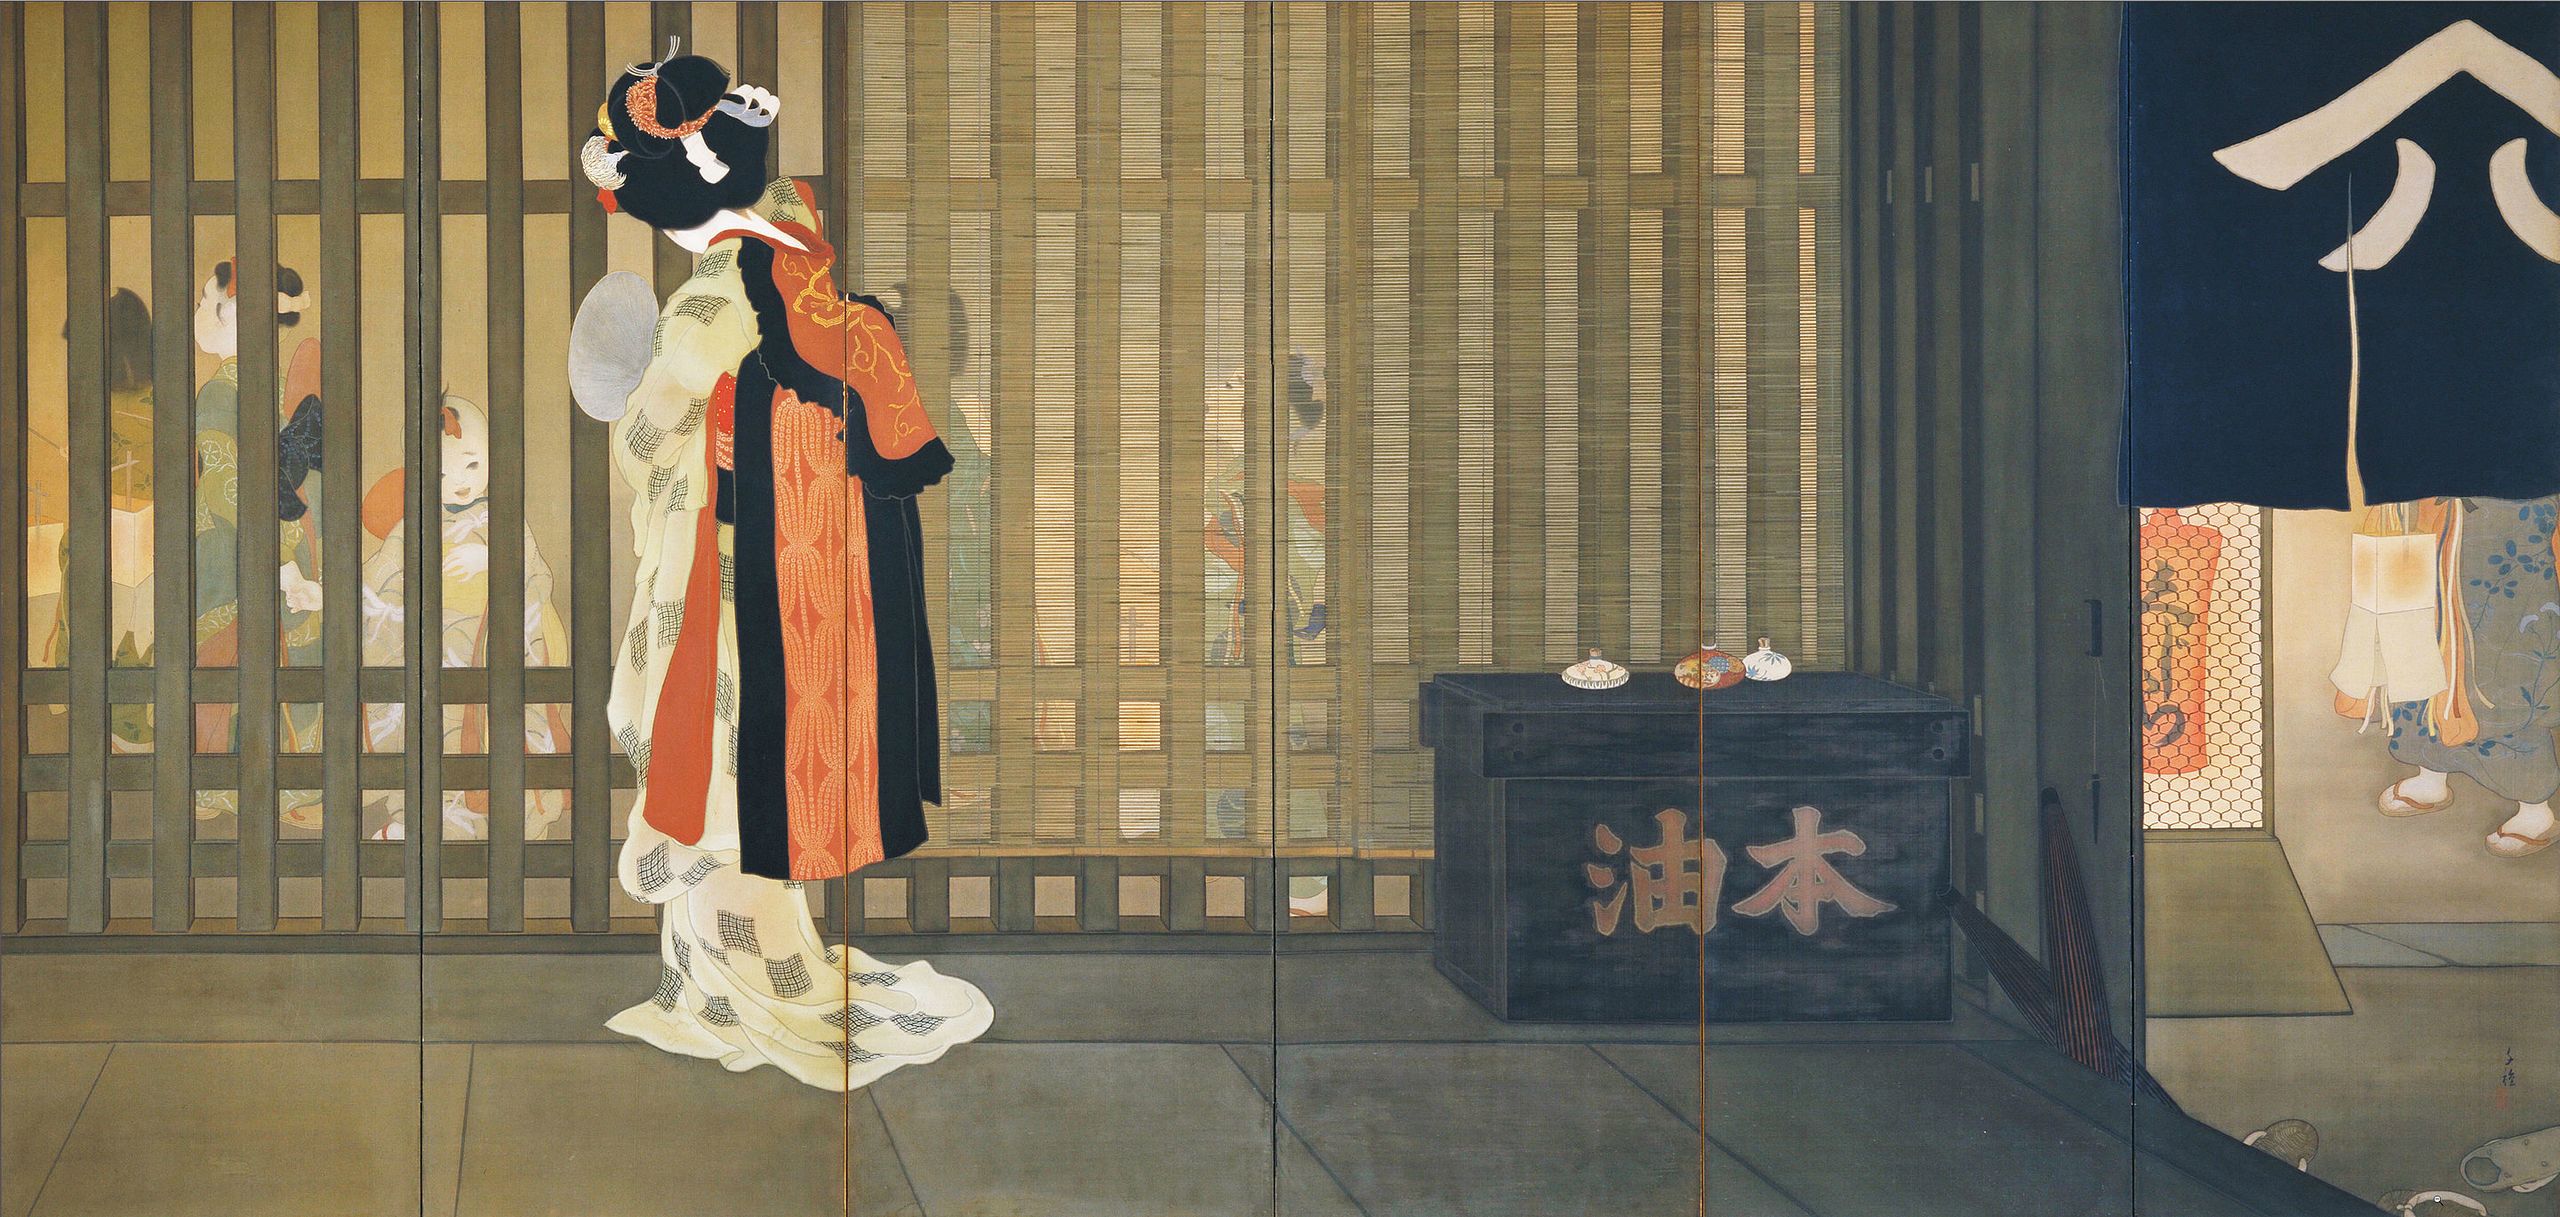 원국(먼 나라; Ongoku) by Chigusa Kitani - 1918 - 166 cm x 342 cm 